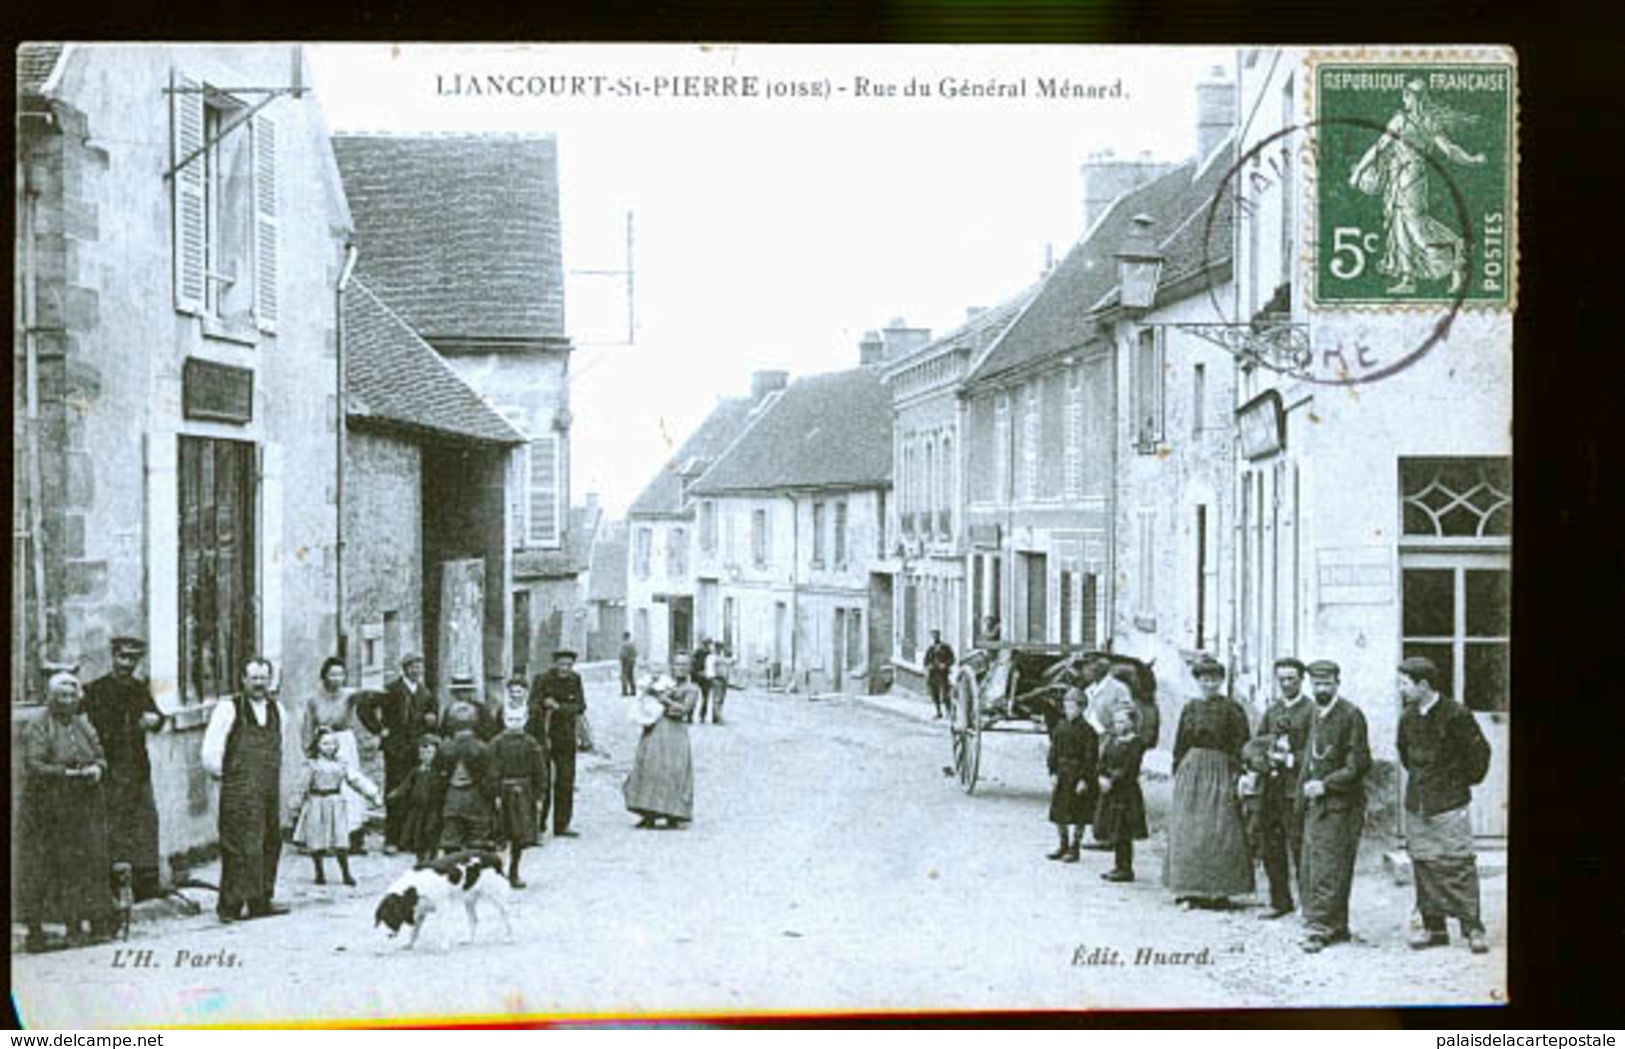 LIANCOURT - Liancourt